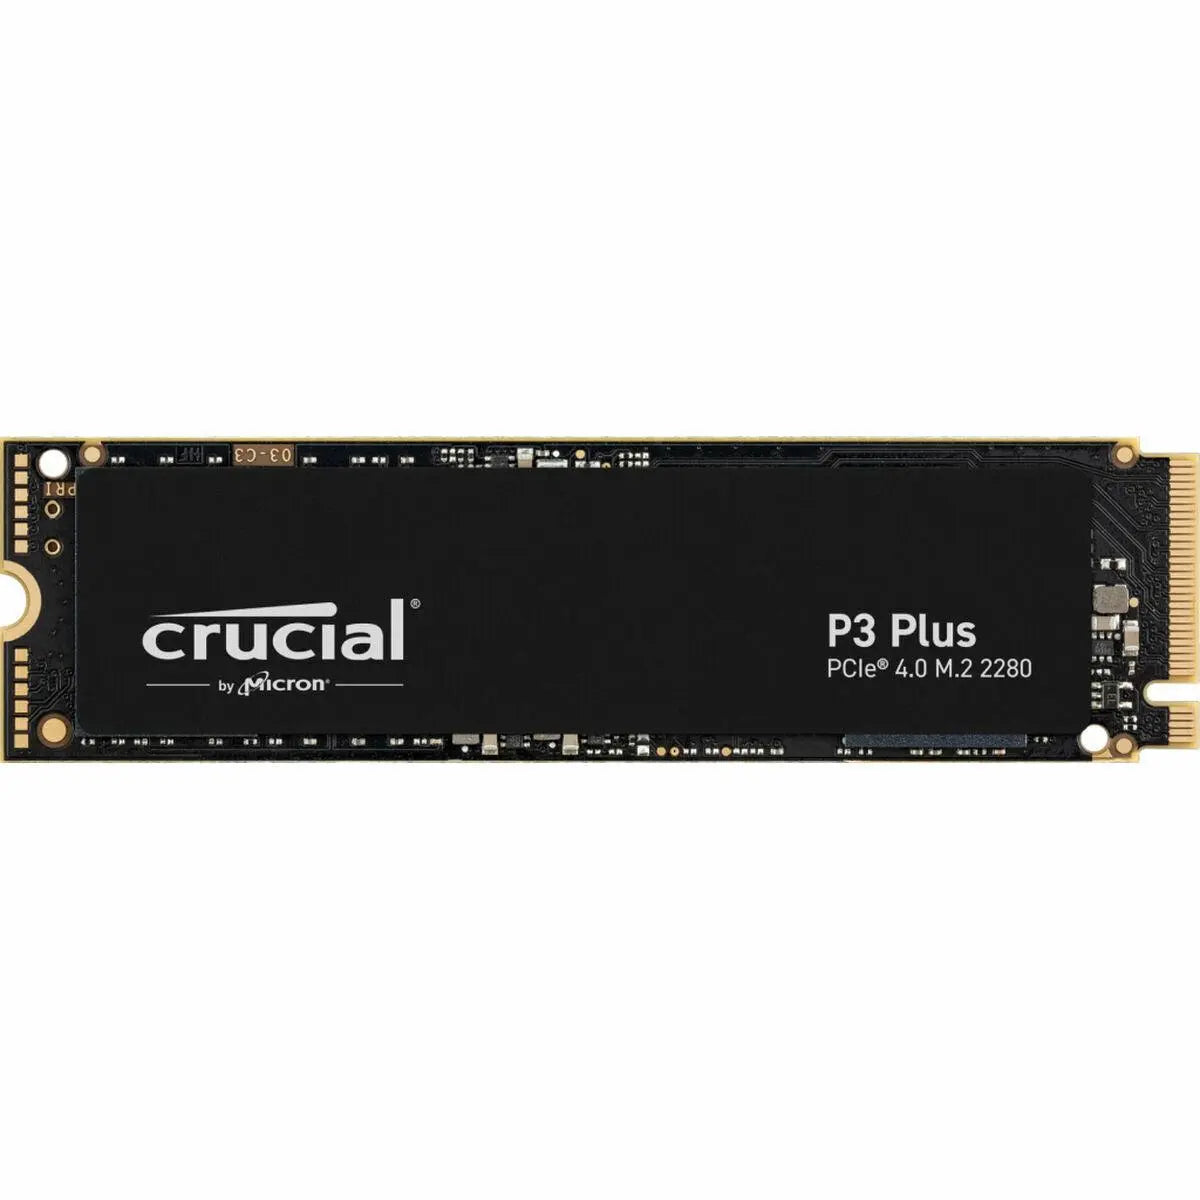 Hard Drive Crucial P3 Plus Internal SSD 1 TB SSD - IGSI Europe Ltd